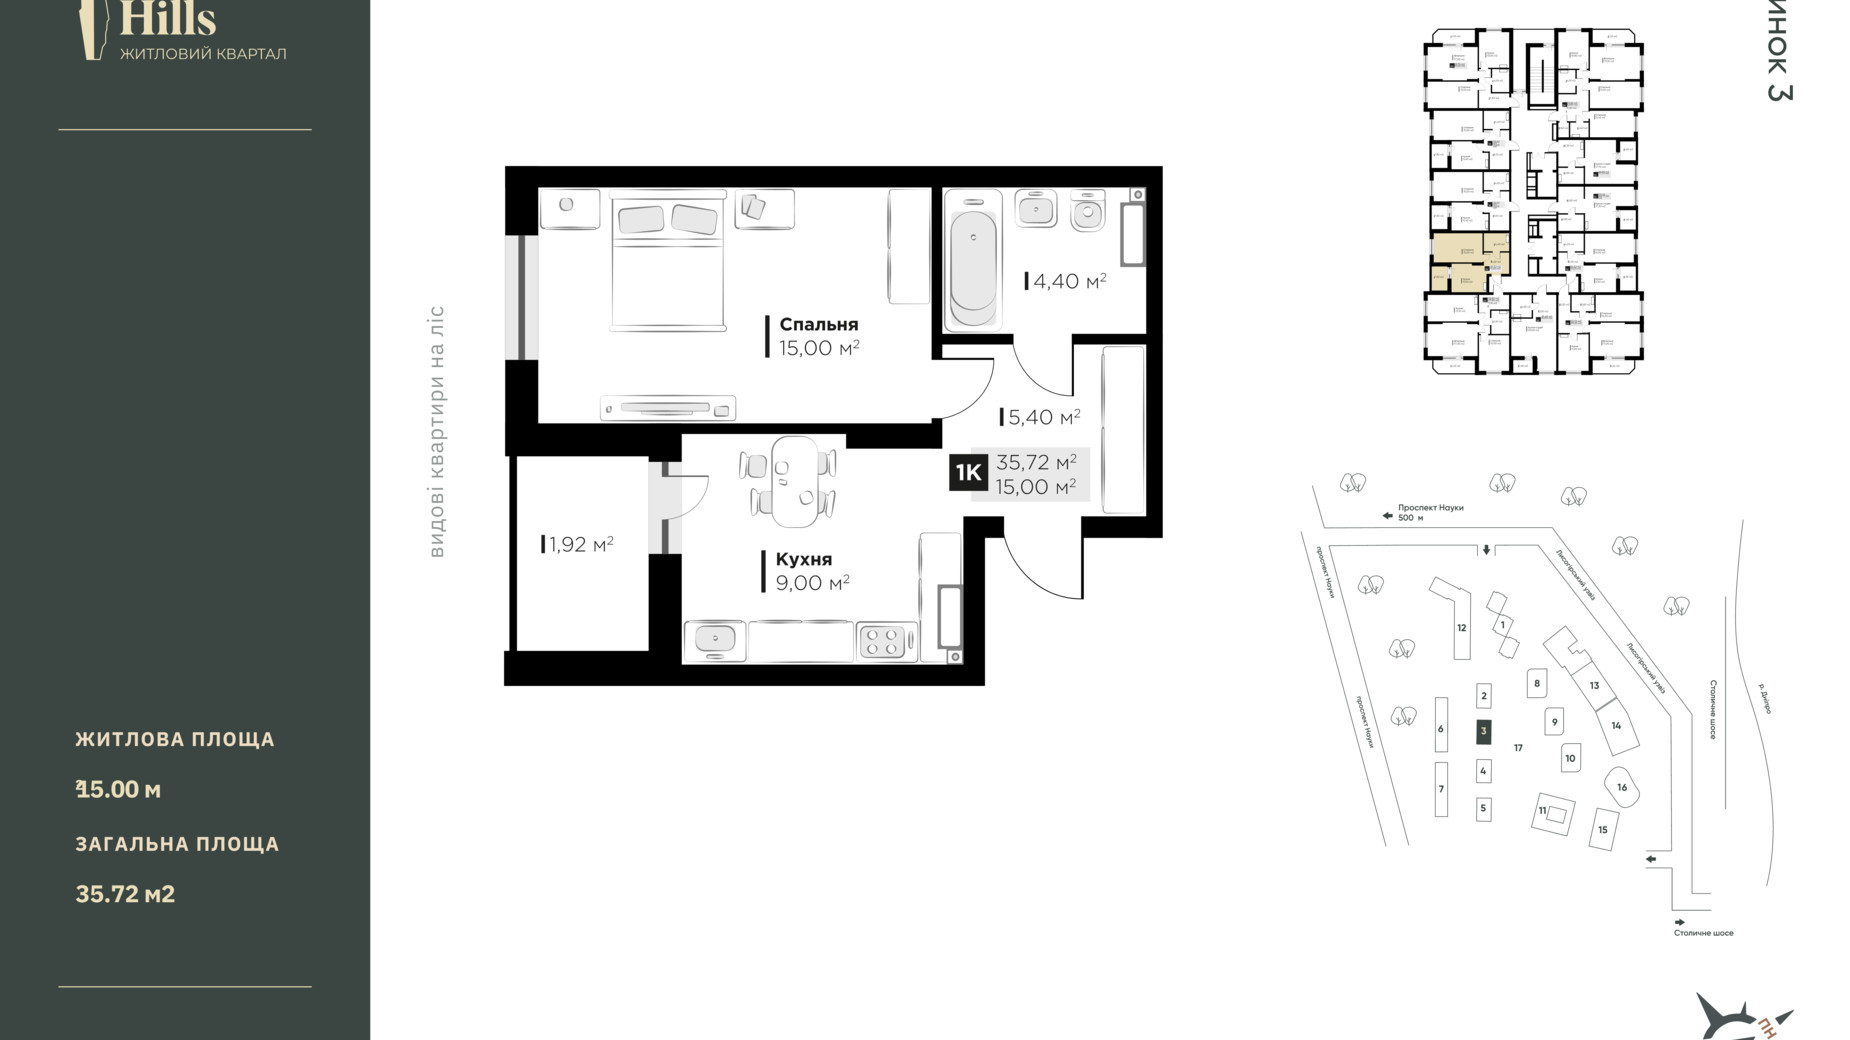 Планировка 1-комнатной квартиры в ЖК Central Hills 35.72 м², фото 592766